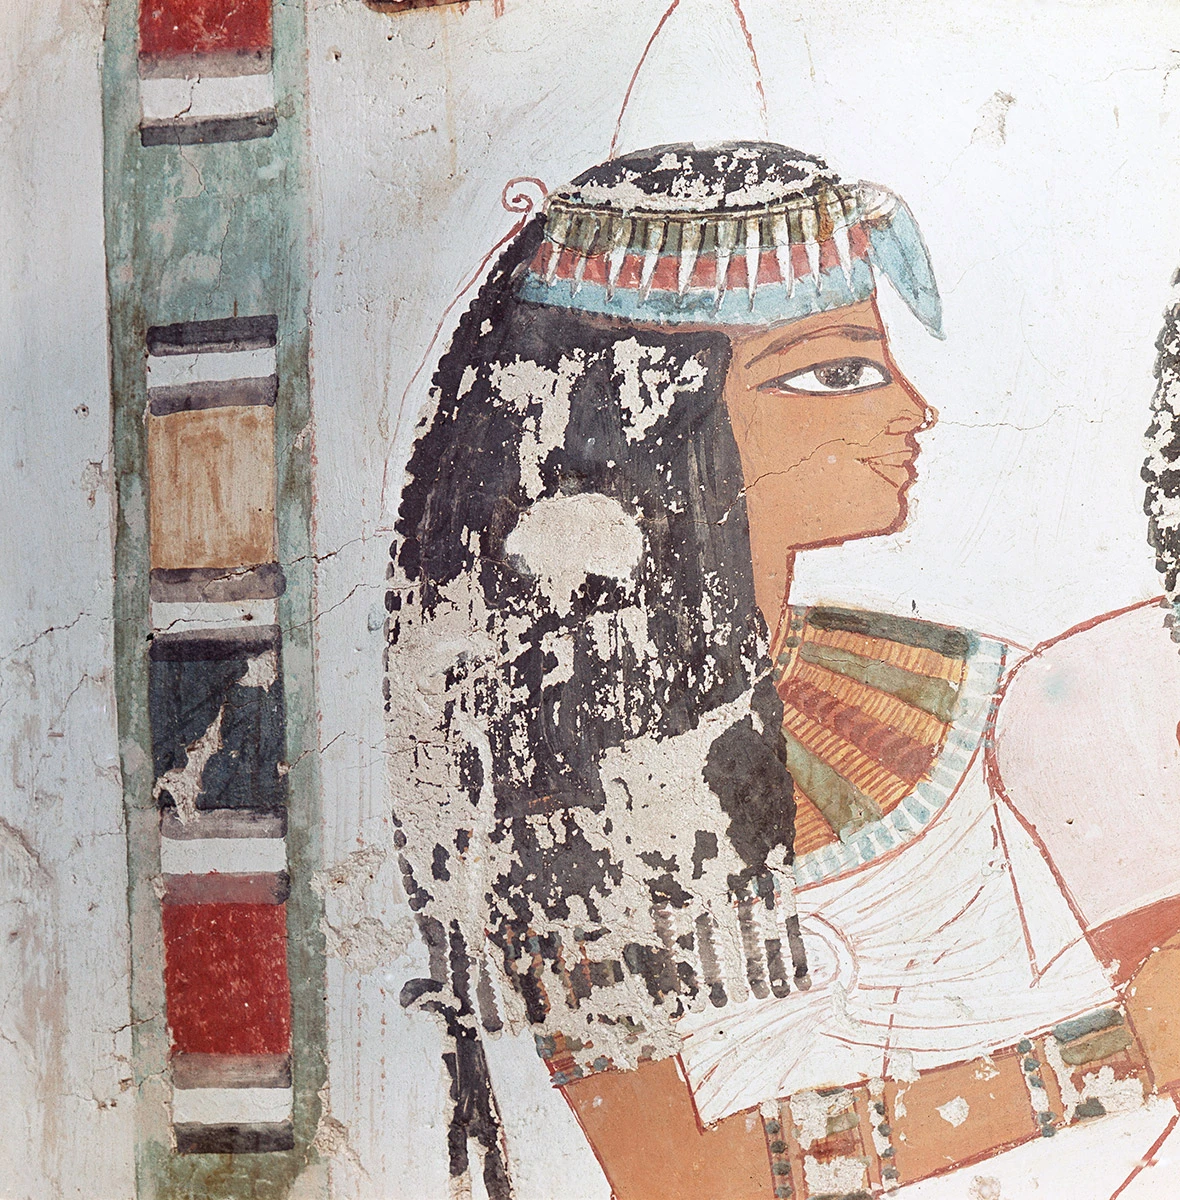 <p>Чтобы соответствовать стандартам красоты, египтянки активно использовали косметику, в том числе масла,&nbsp;белила, тени из древесной или малахитовой&nbsp;пыли</p>